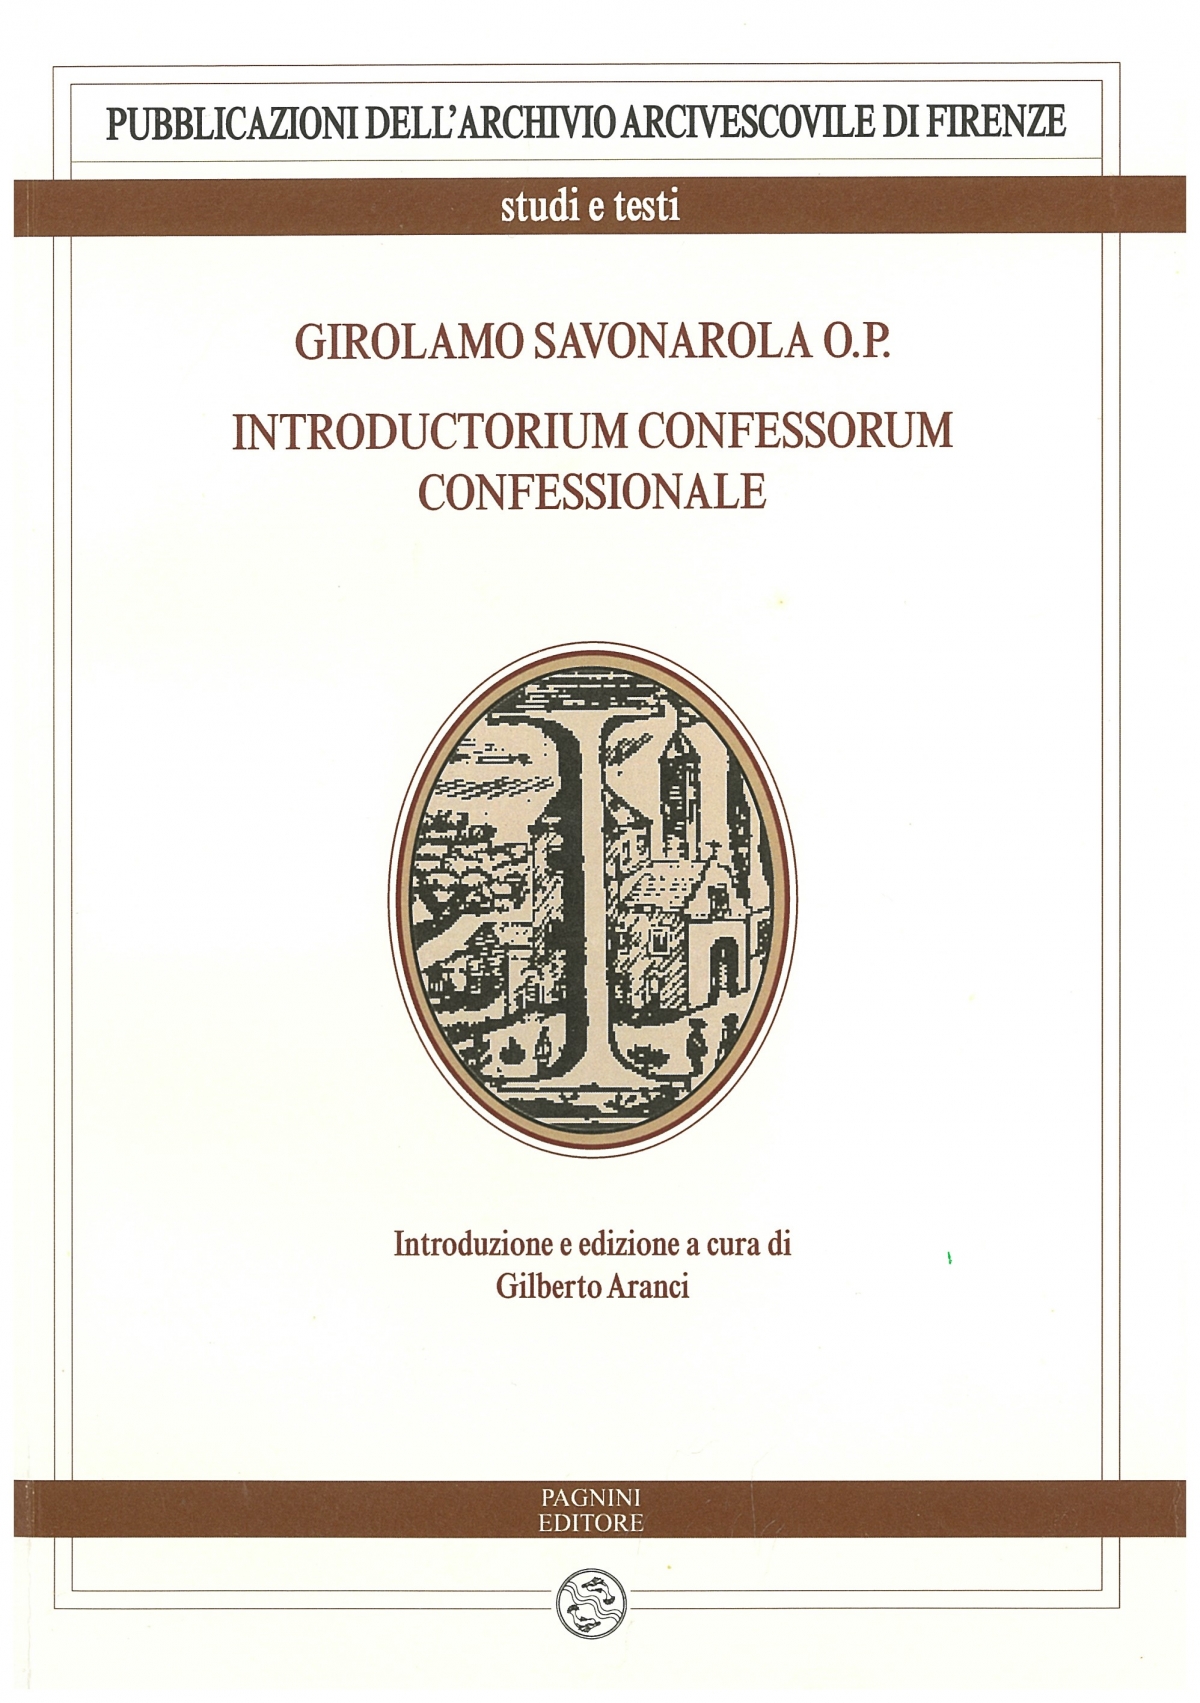 Girolamo Savonarola O. P.  introductorium confessorum confessionale